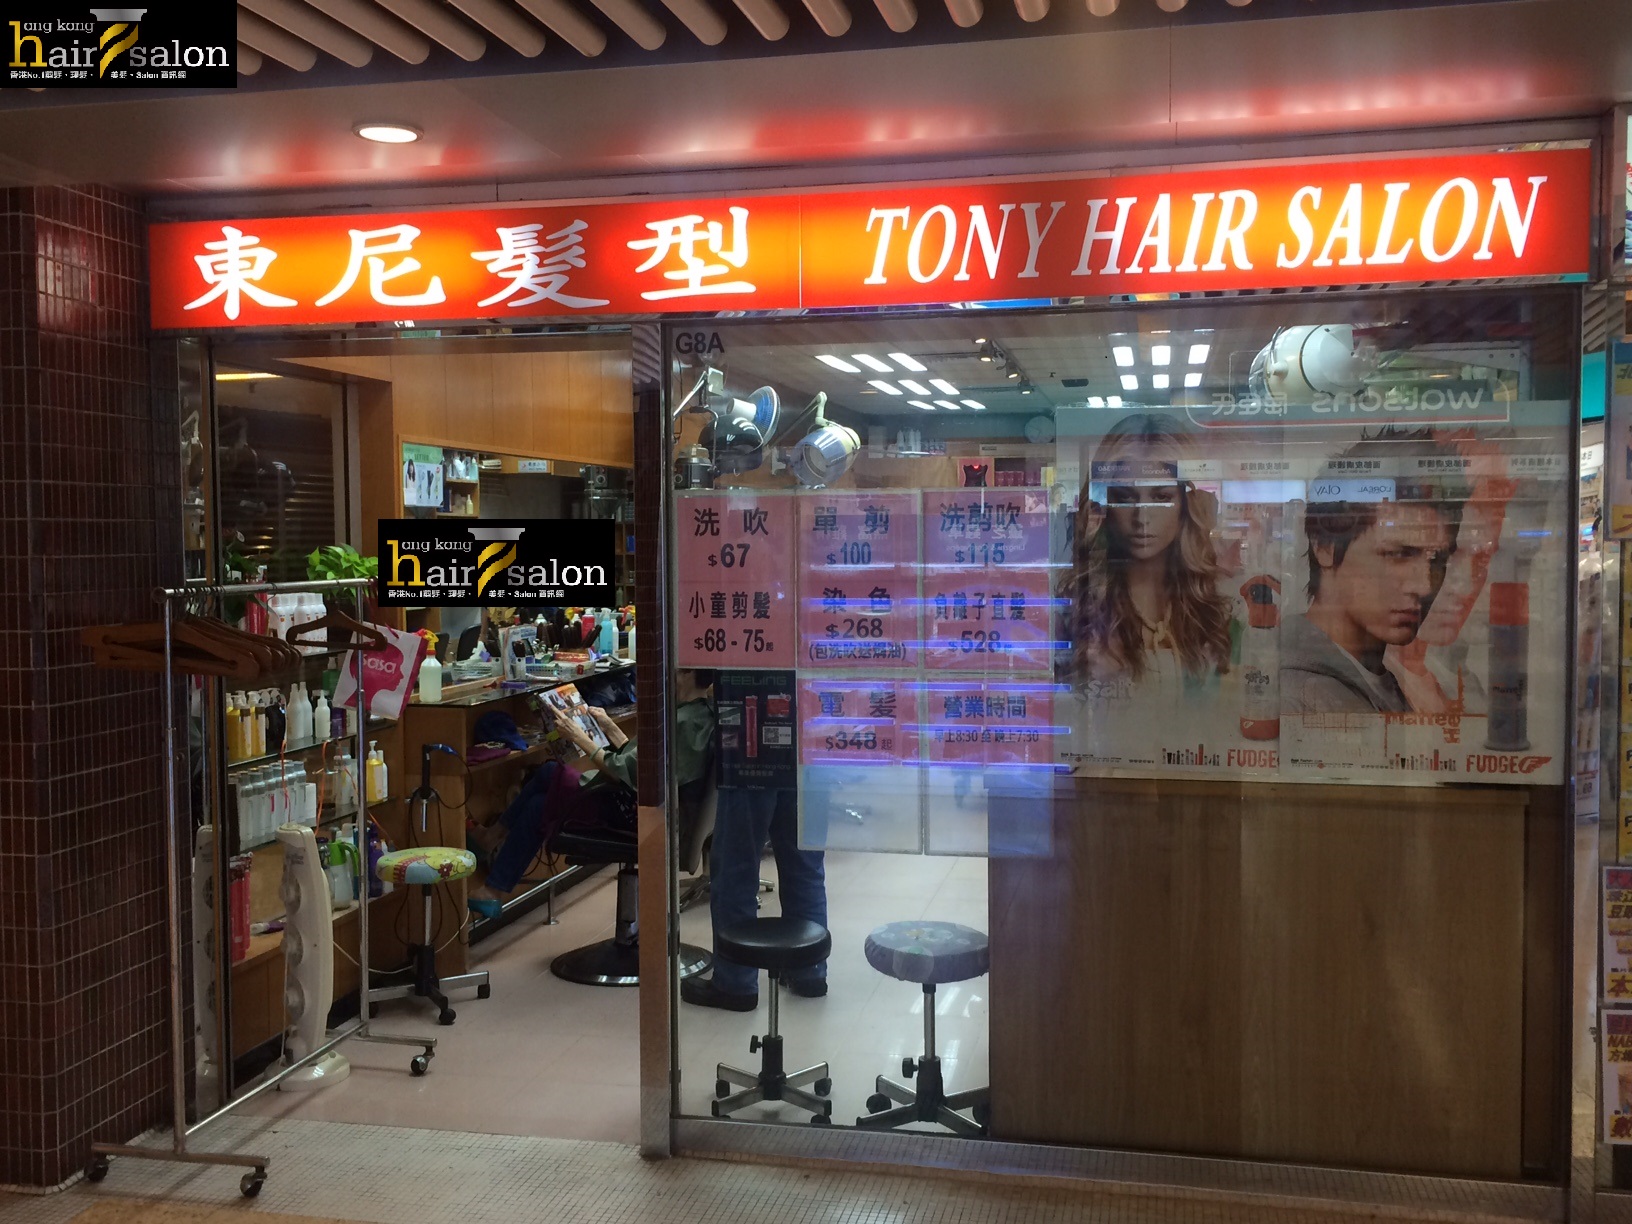 洗剪吹/洗吹造型: 東尼髮型 Tony Hair Salon